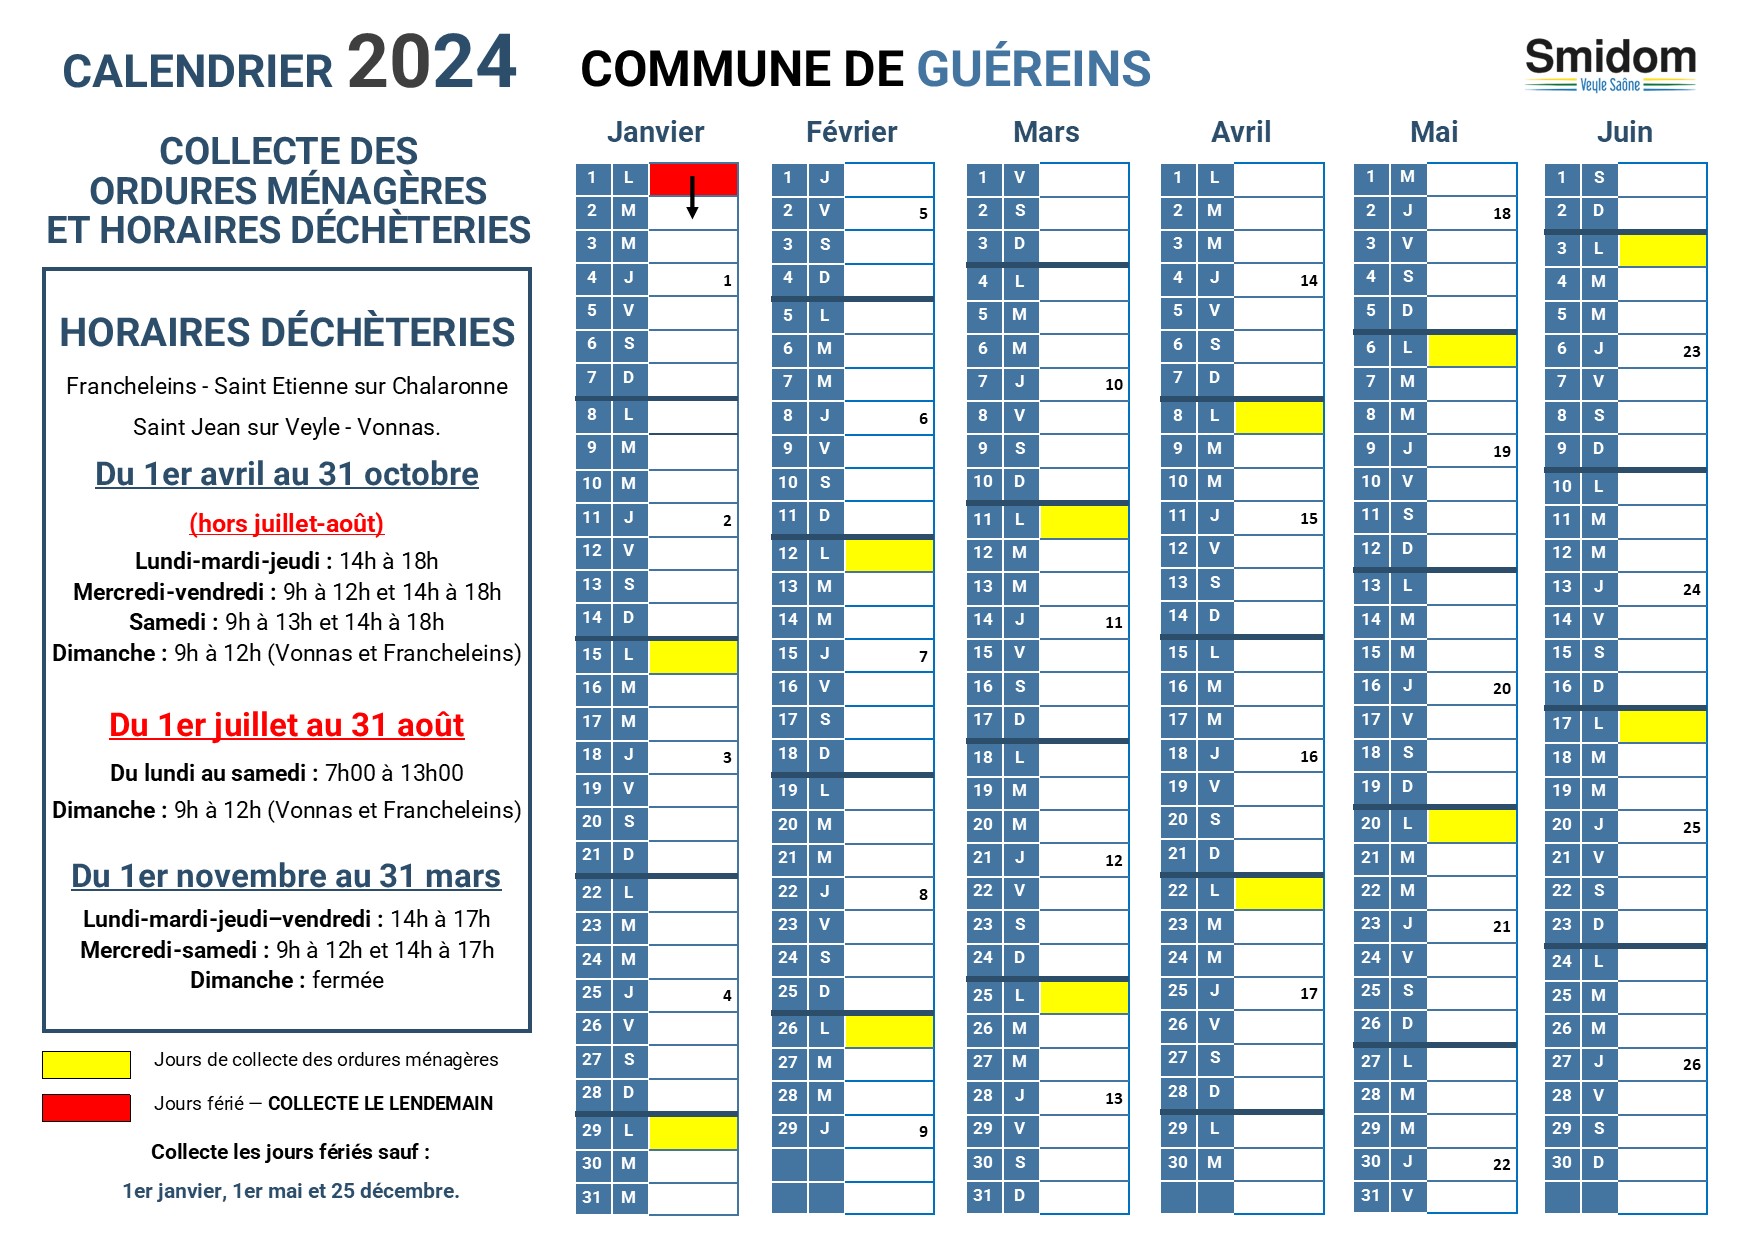 GUEREINS - Calendrier 2024 - 1.jpg